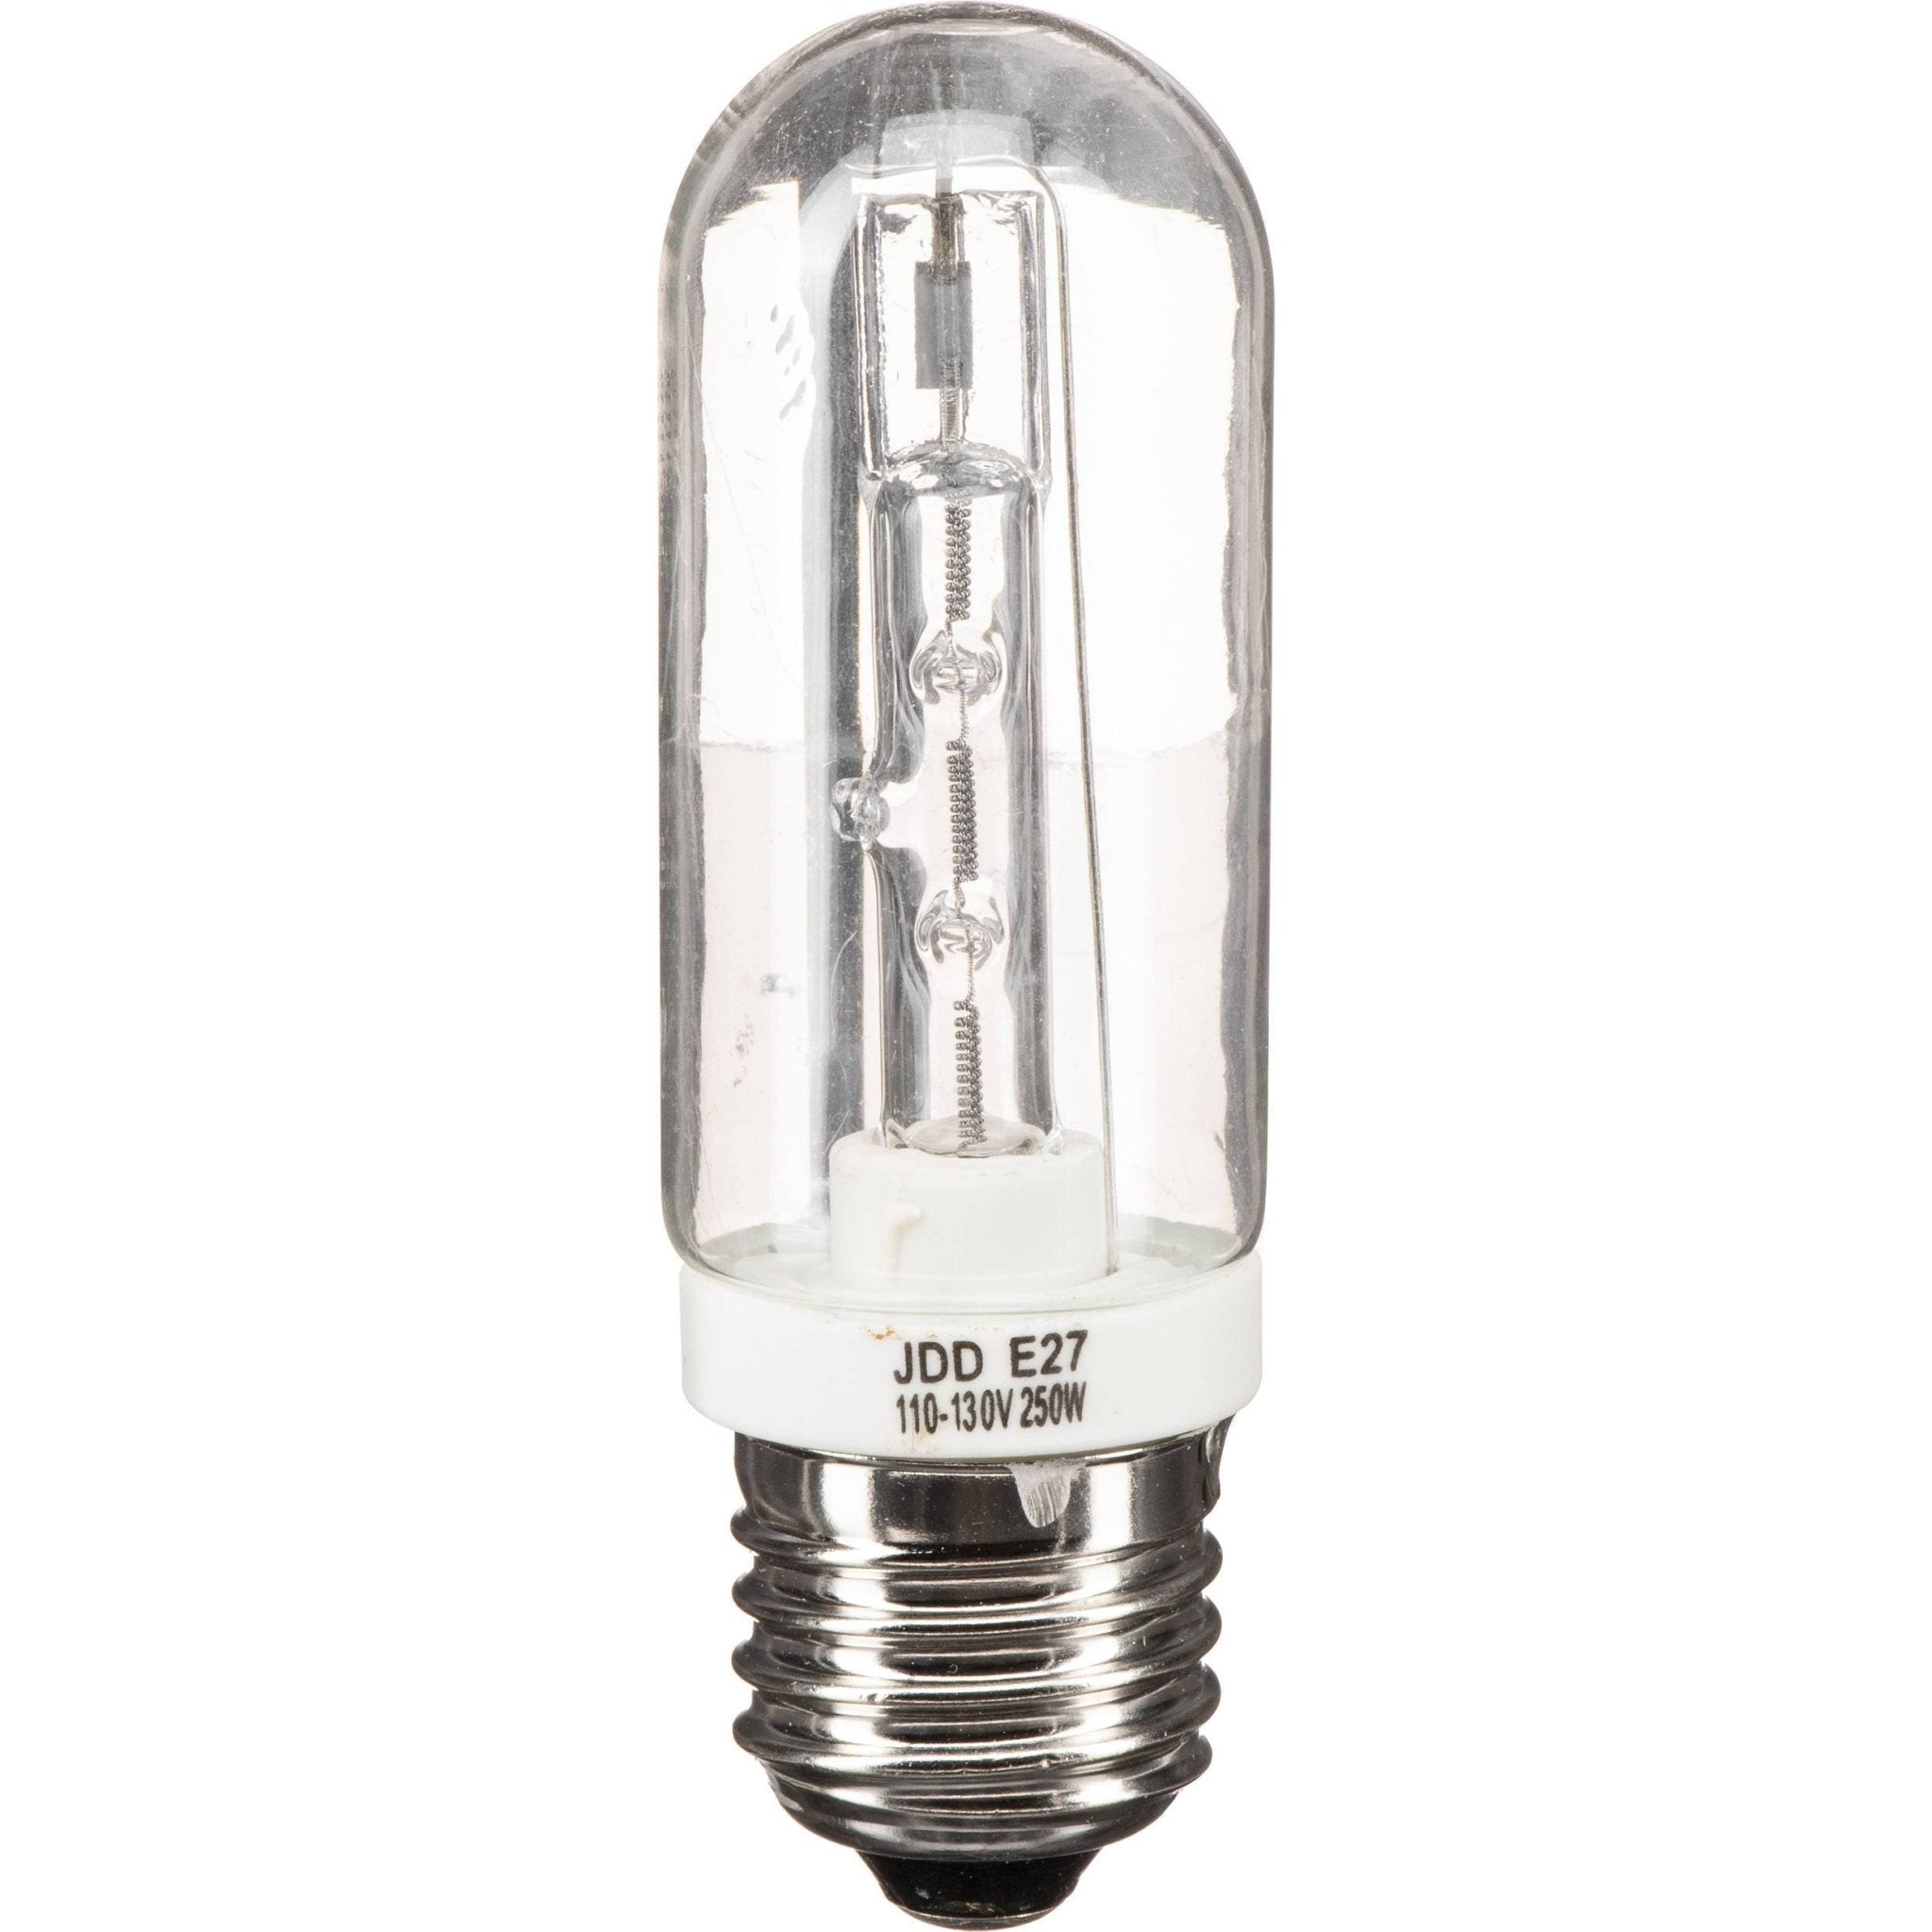 FSL JDD Halogen Light Bulb E27 230V 250W Clear 37250